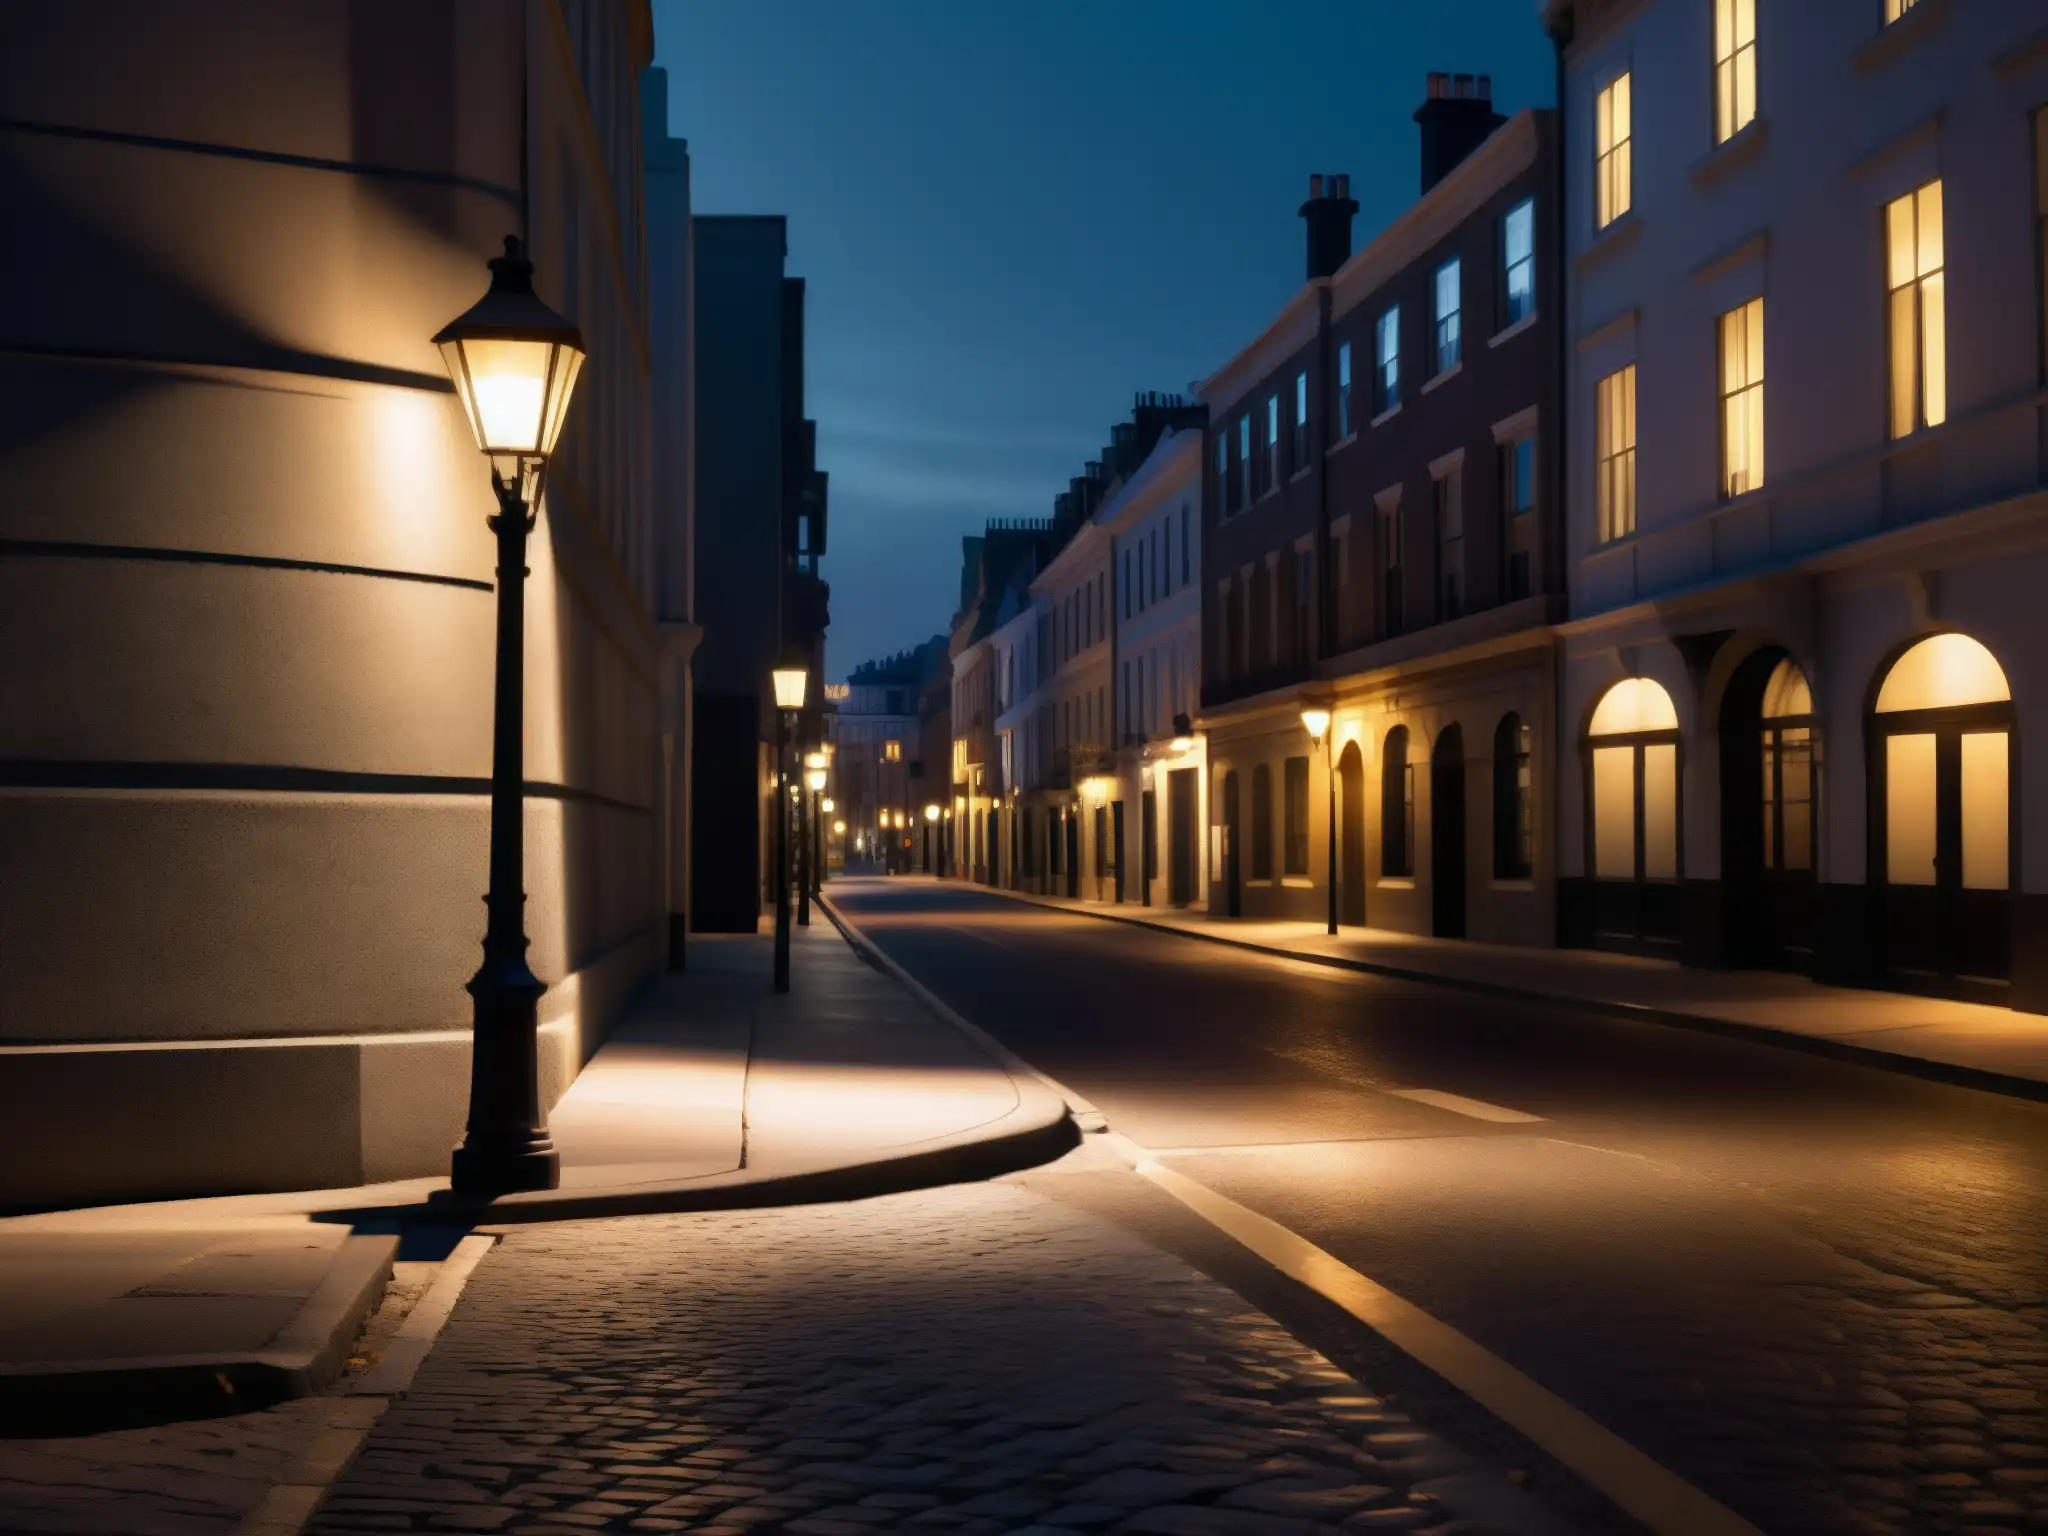 Una calle urbana poco iluminada de noche, con una farola parpadeante y sombras misteriosas